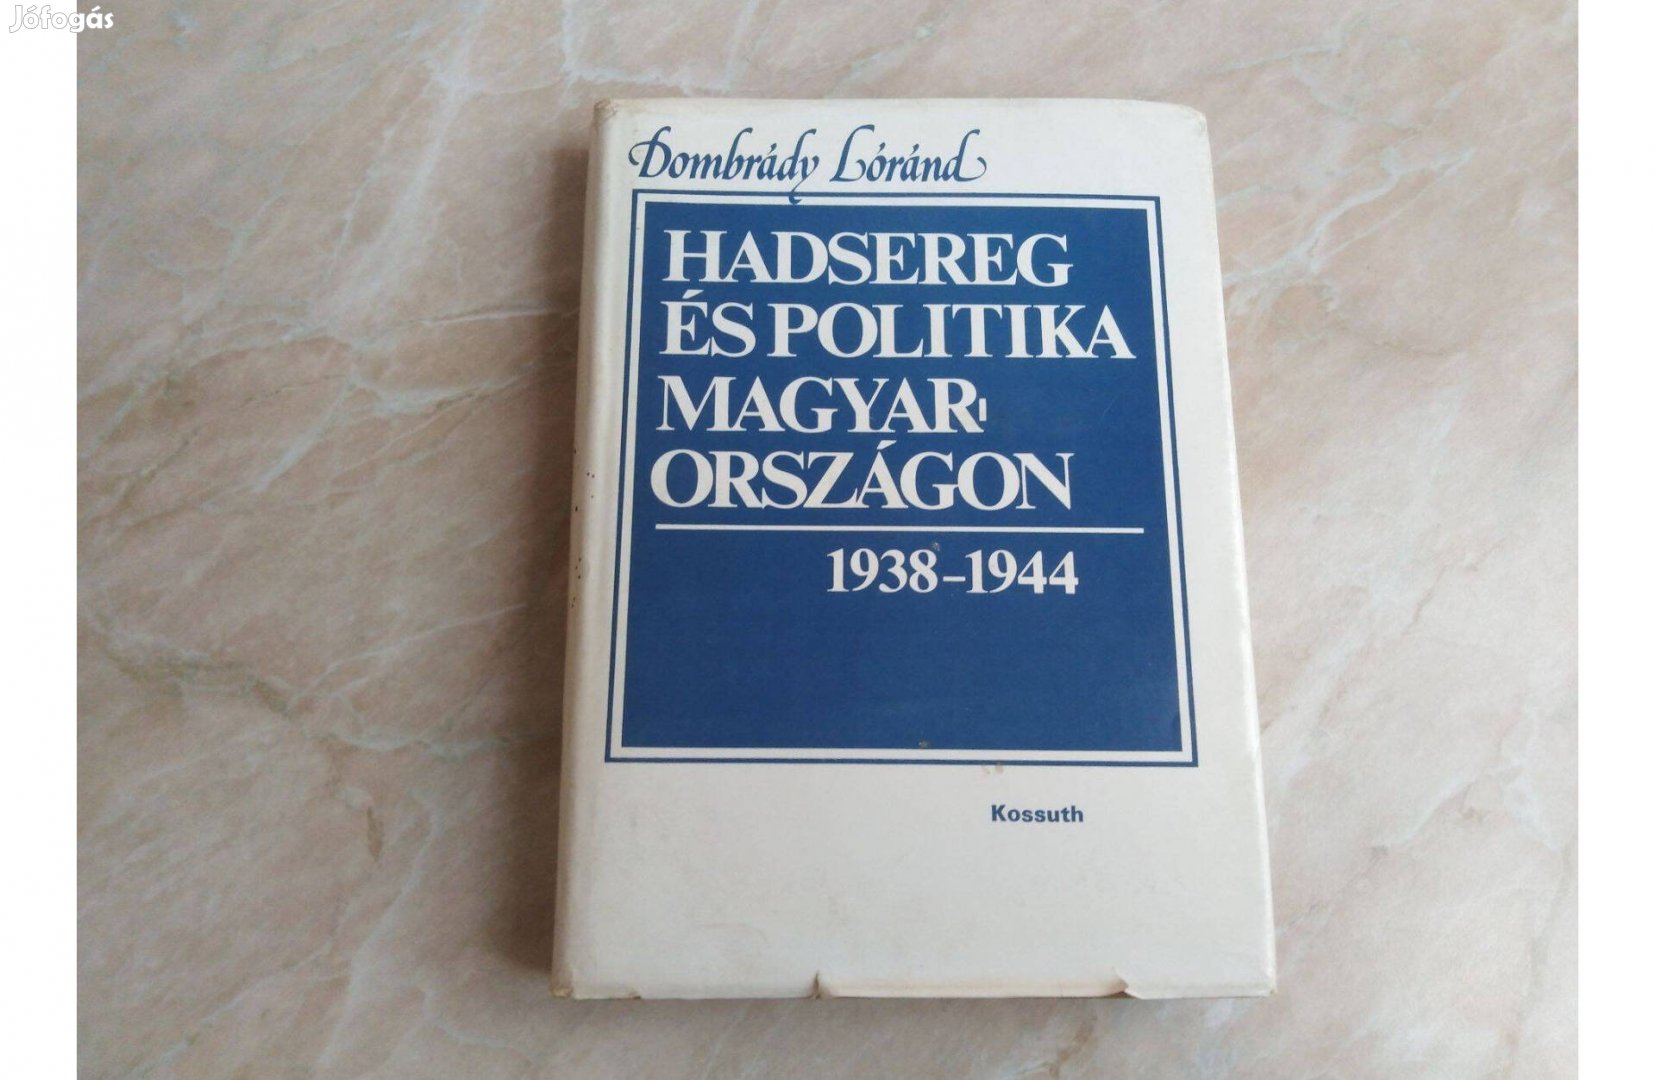 Hadsereg és politika Magyarországon 1938-1944